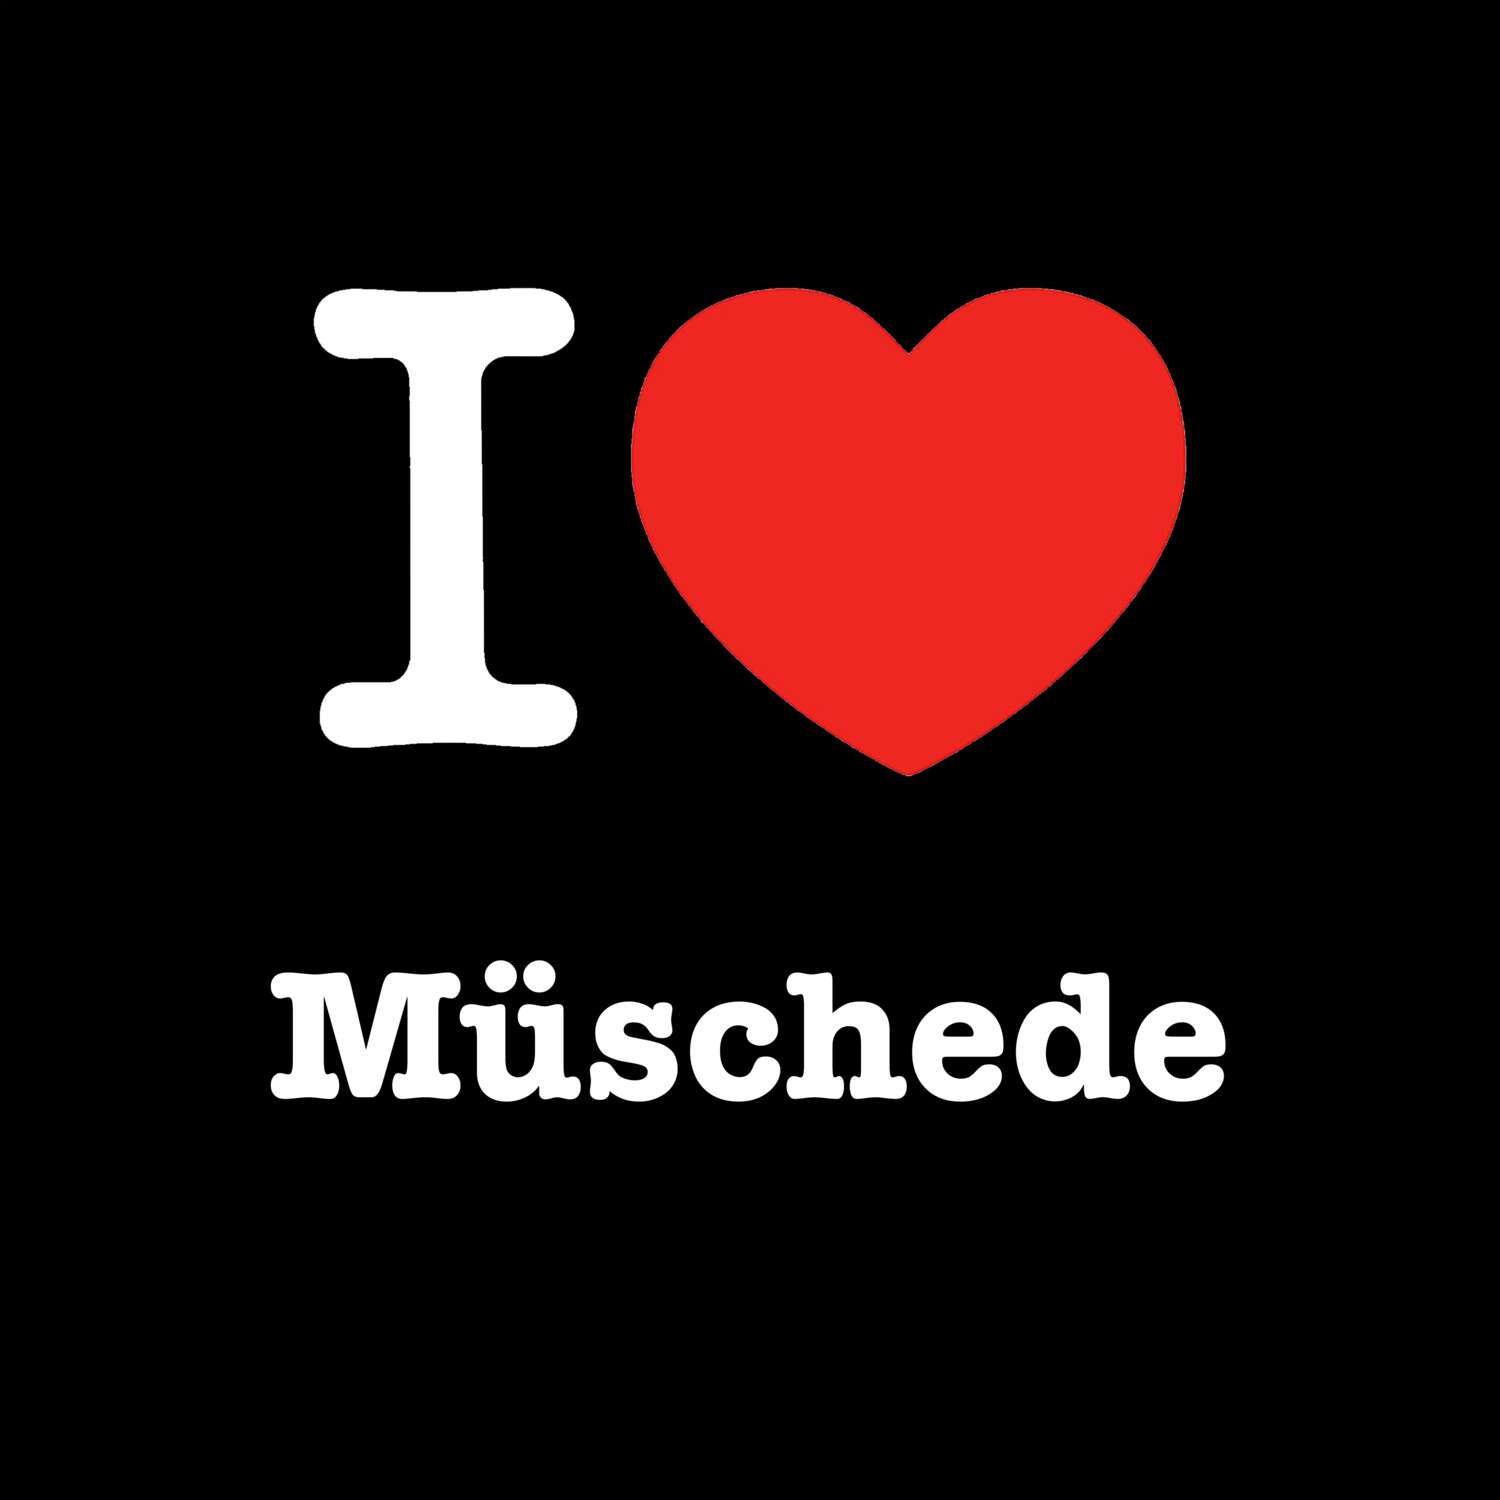 Müschede T-Shirt »I love«